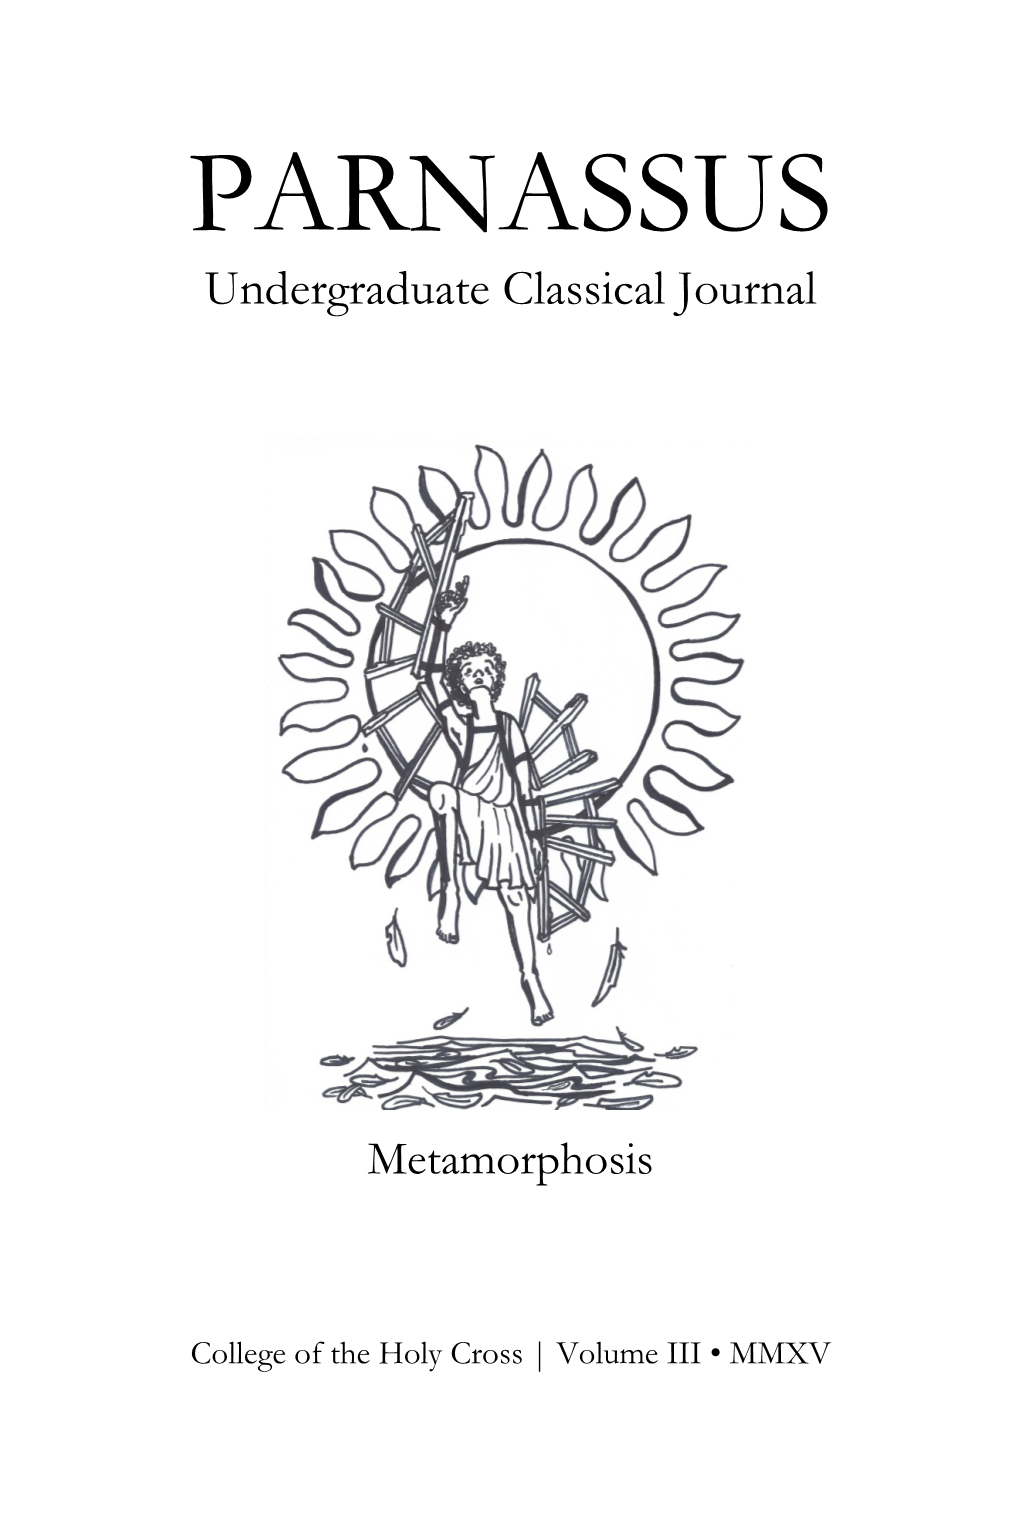 PARNASSUS Undergraduate Classical Journal